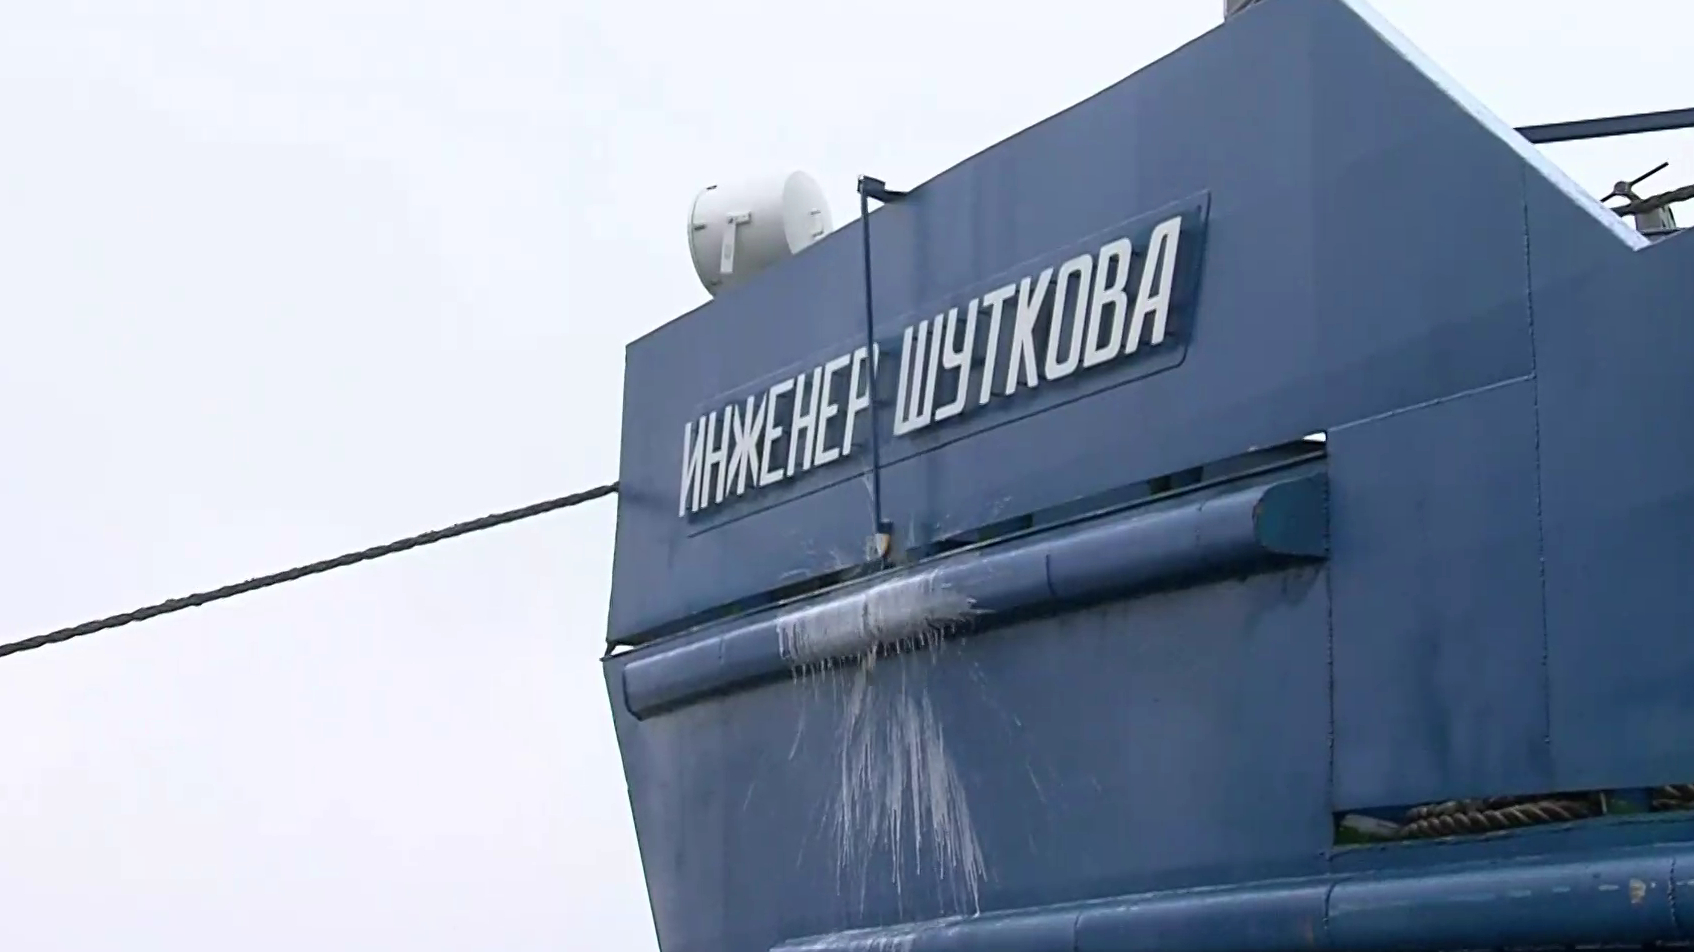 Груженый щебнем сухогруз «Инженер Шуткова» сел на мель вблизи Нижнего Новгорода